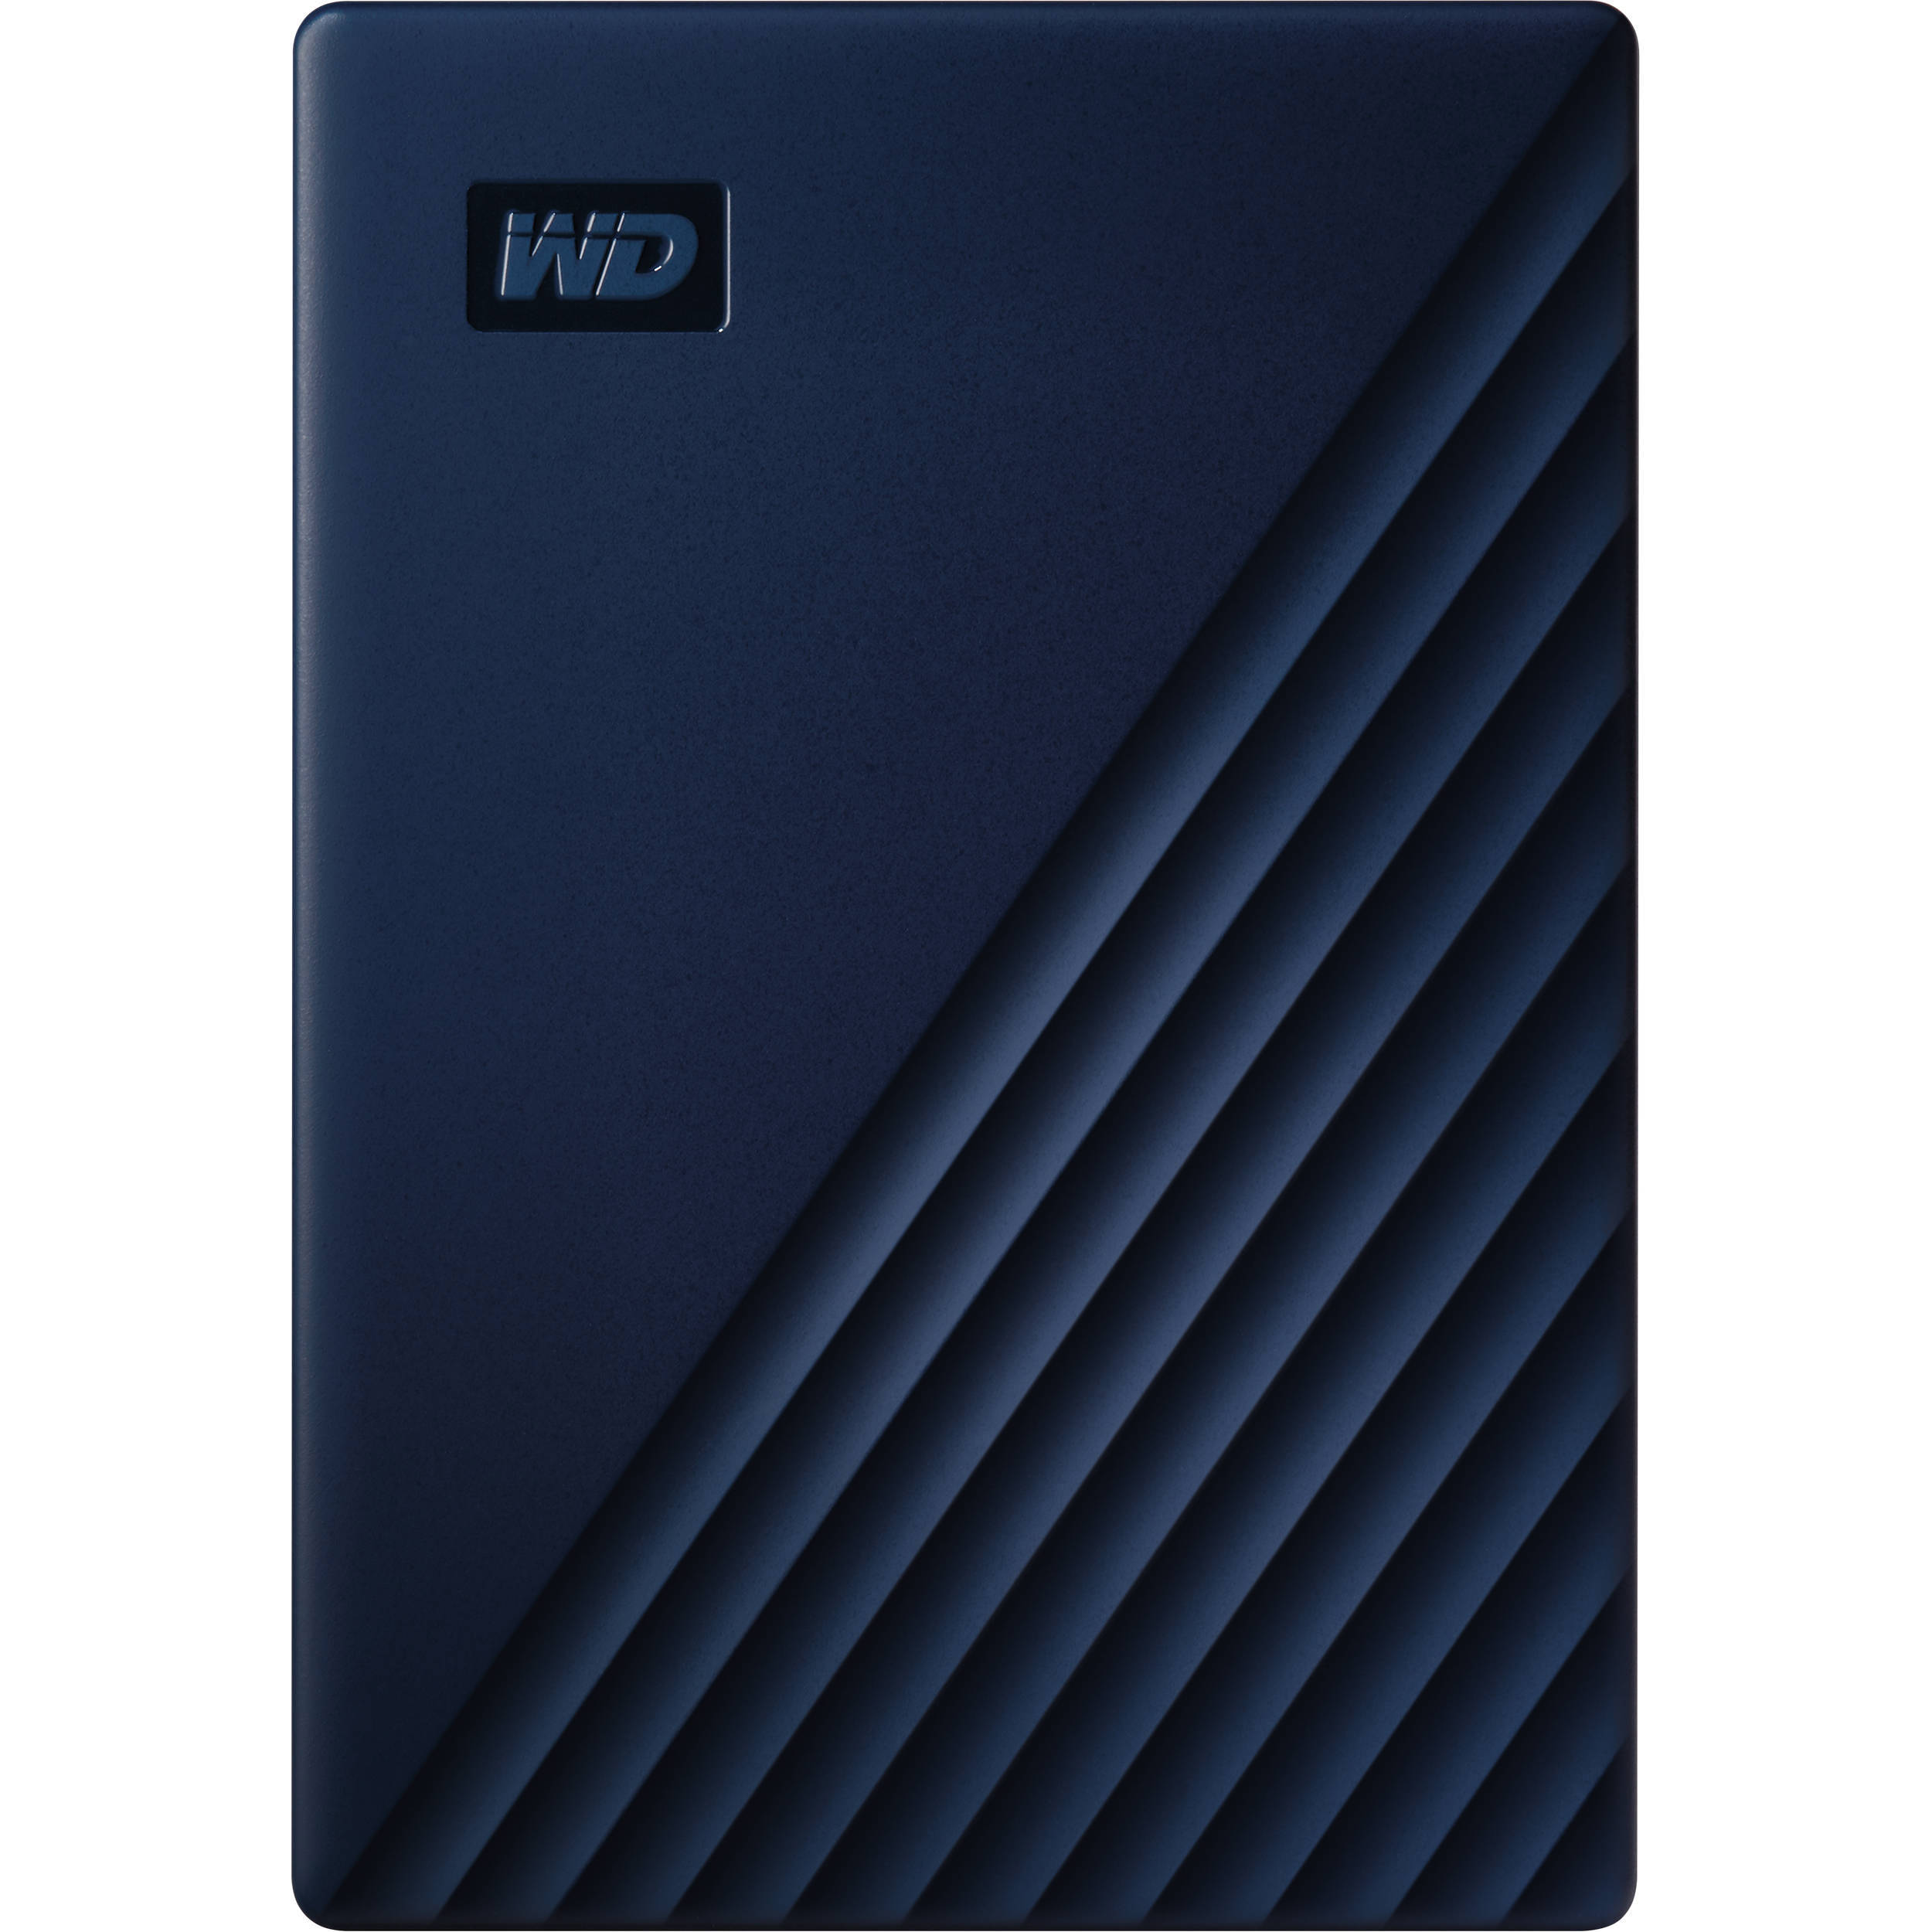 Внешний накопитель WD My Passport for Mac, 2 ТБ, USB 3.0, синий